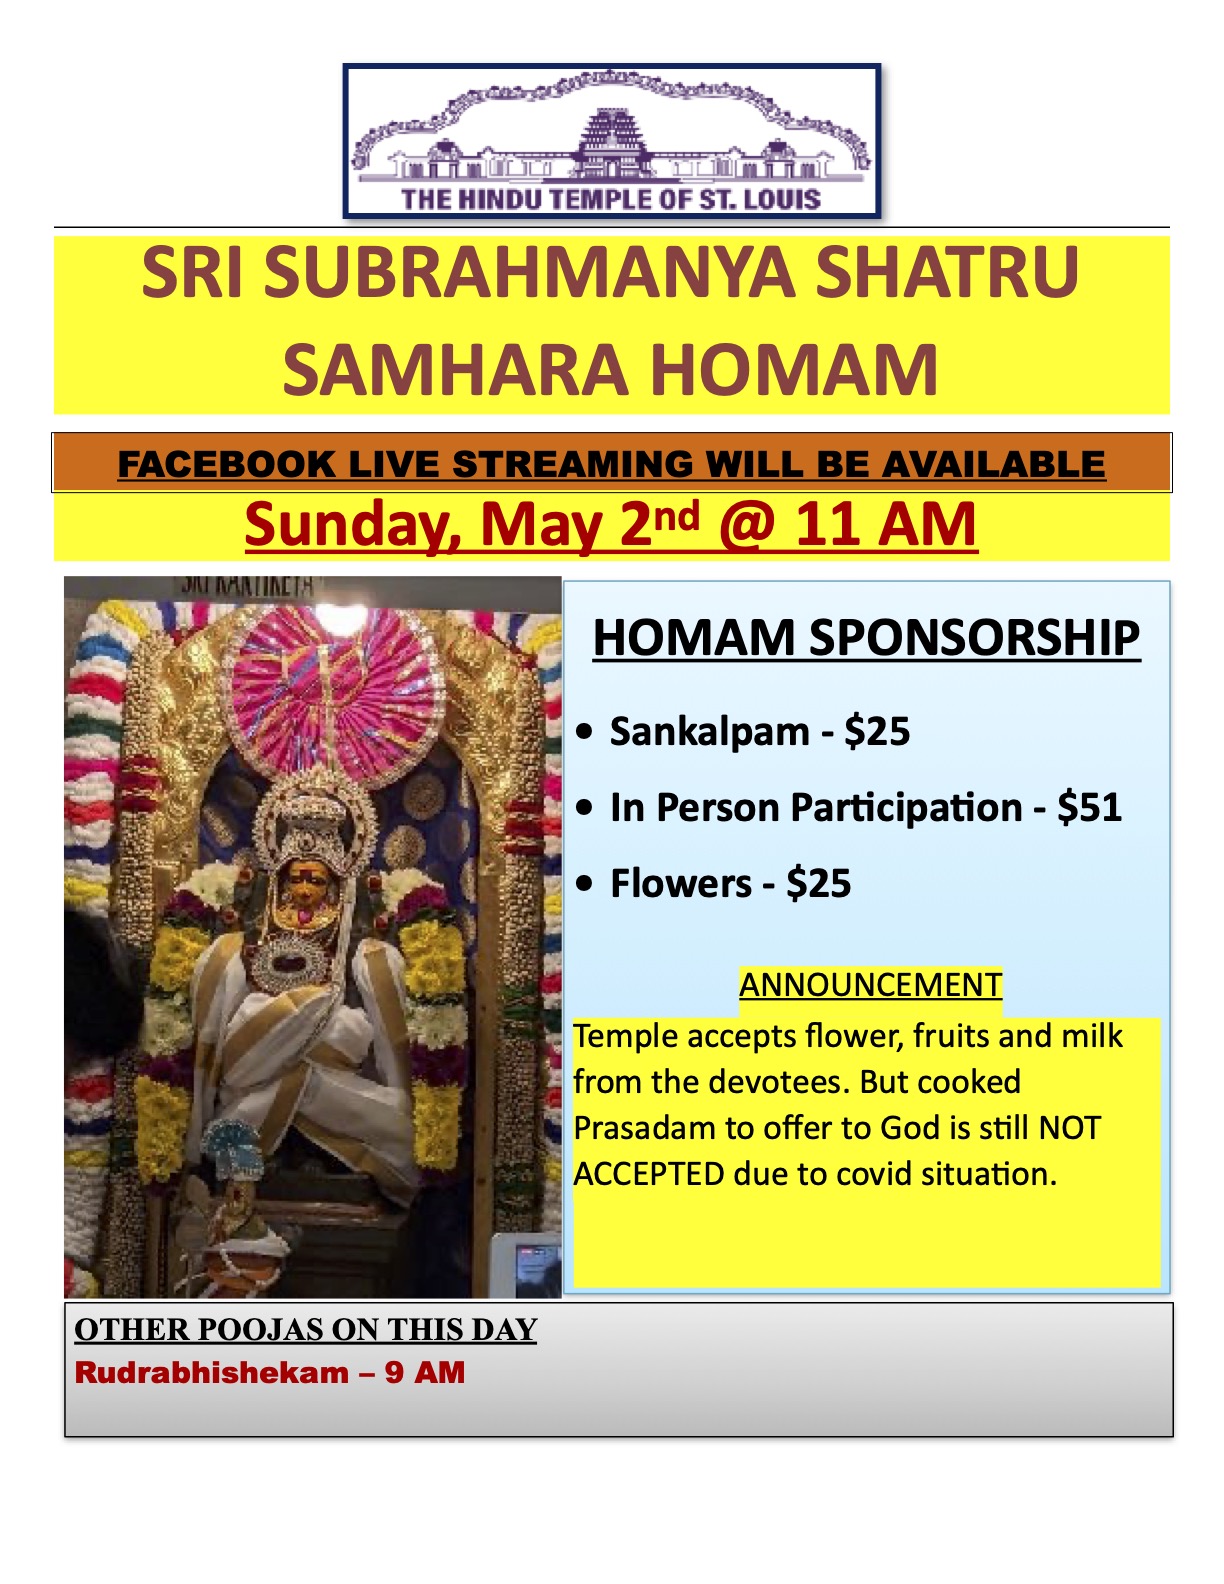 Sri Subrahmnya Shathru Samhara Homam